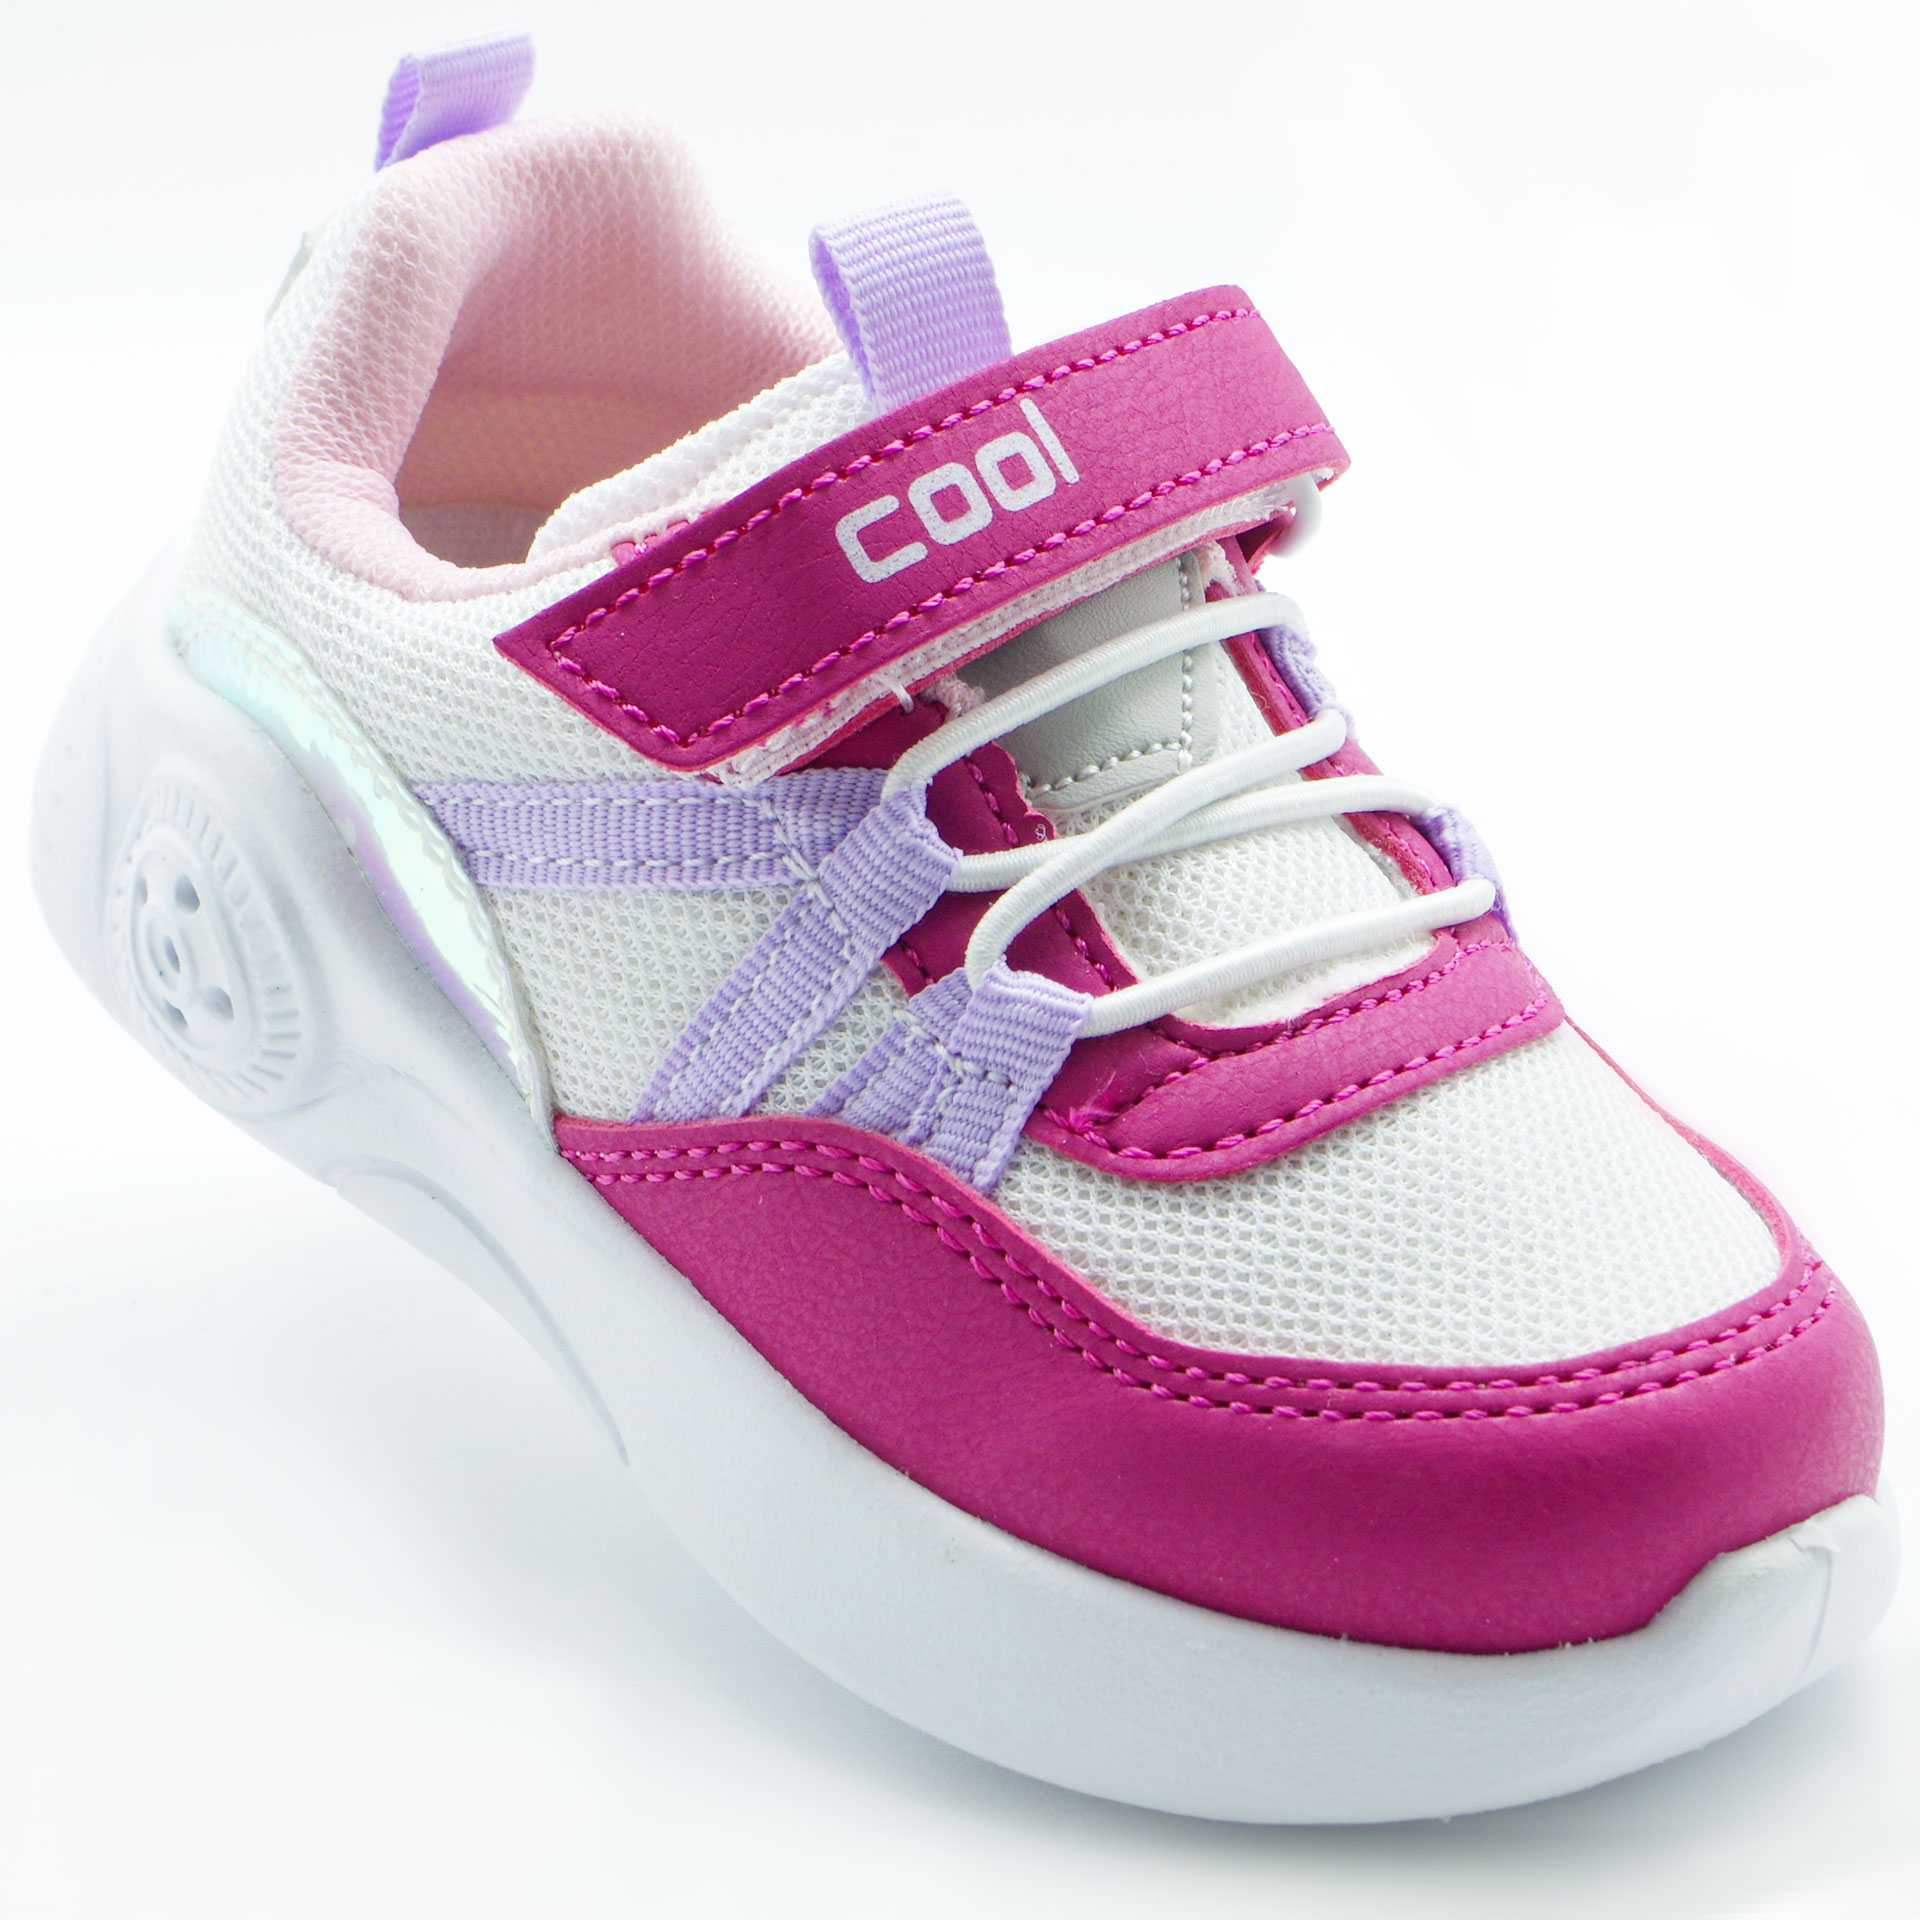 Led Кросівки для дівчат (2198) для дівчинки, матеріал Текстиль, Рожевий колір, 22-26 розміри – Sole Kids